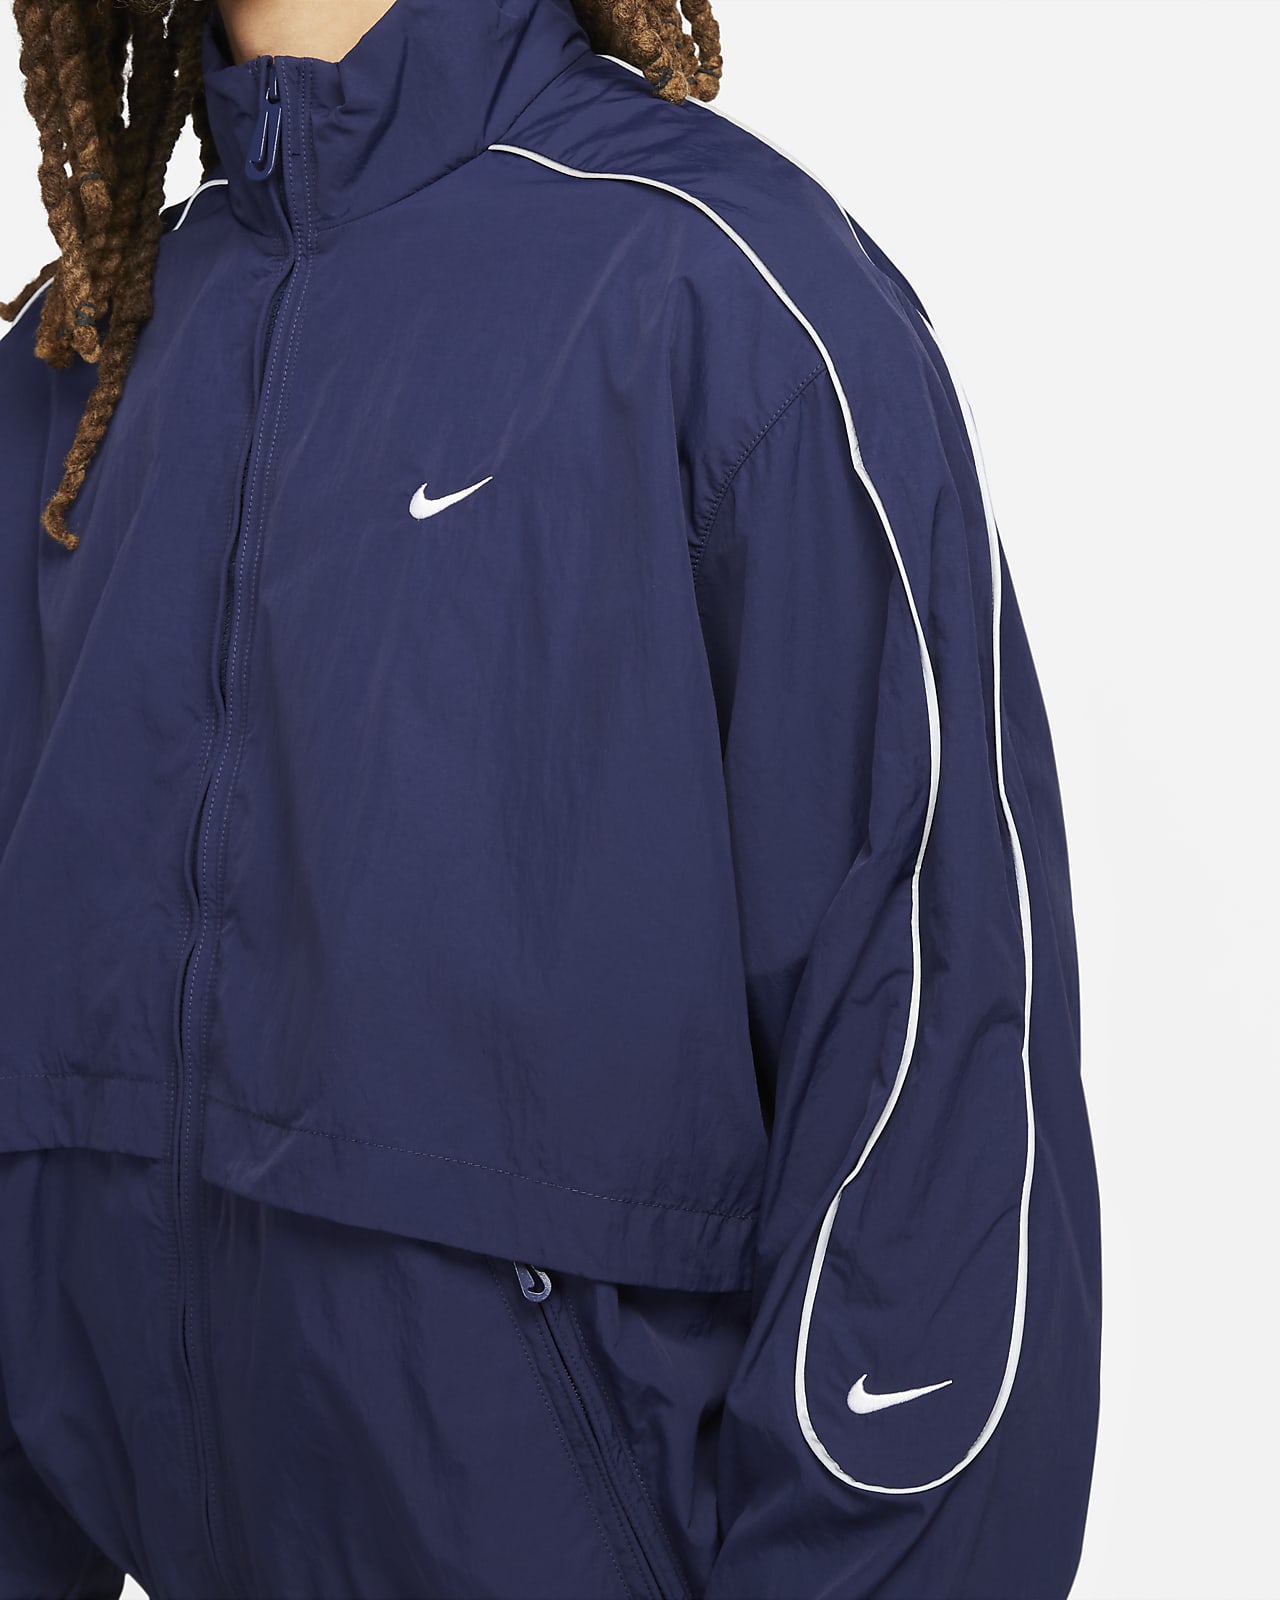 Vævet Nike Sportswear Solo Swoosh-løbejakke til mænd. DK